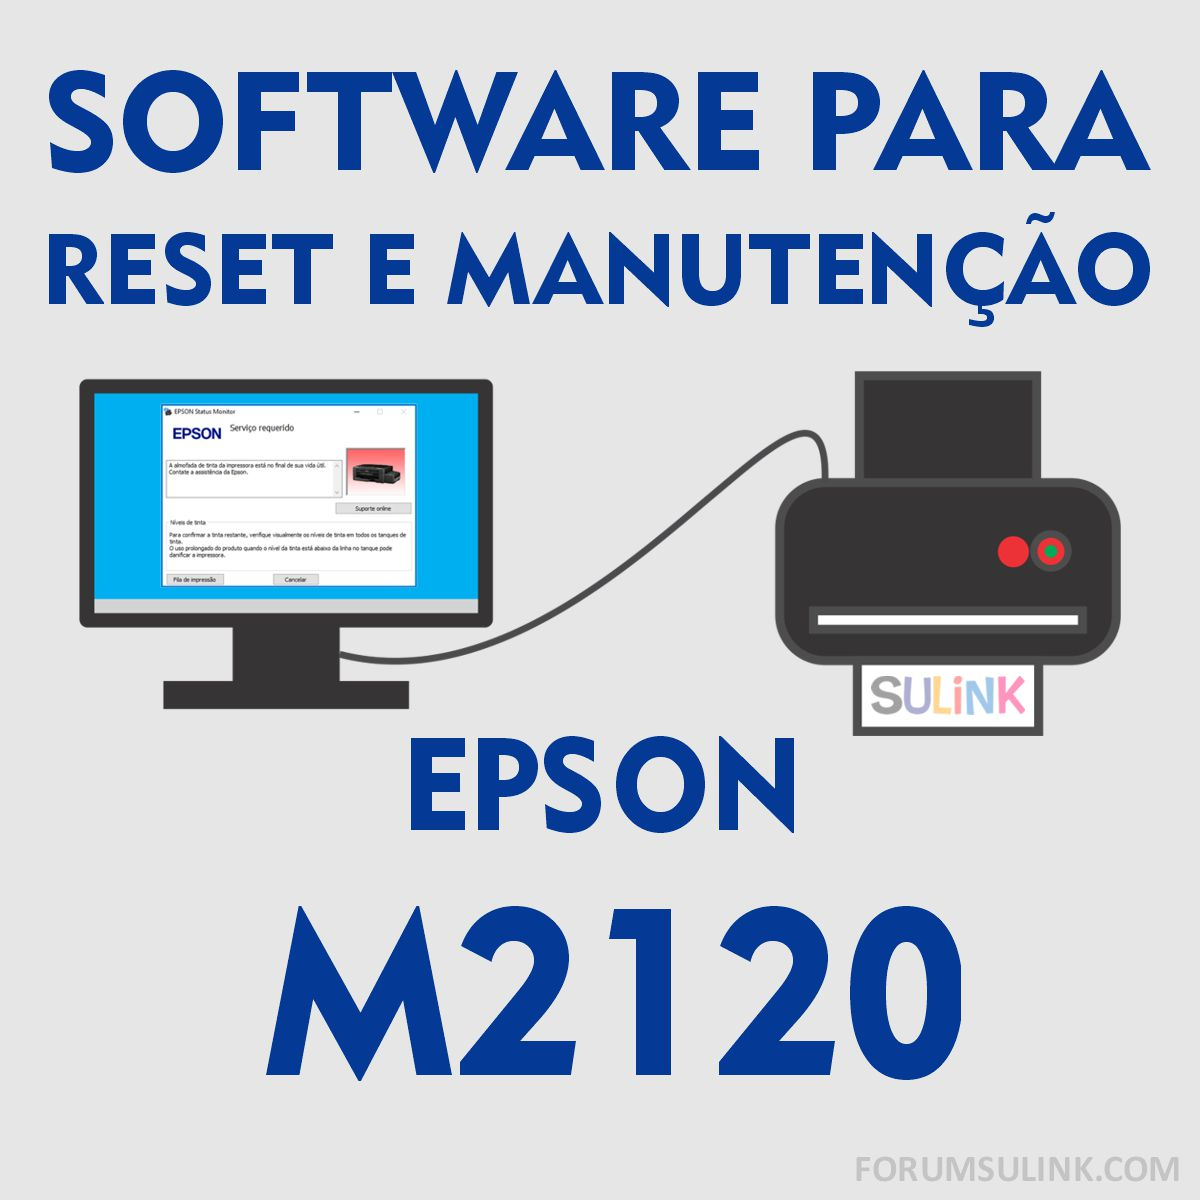 Epson M2120 | Software para Reset das Almofadas e Manutenção